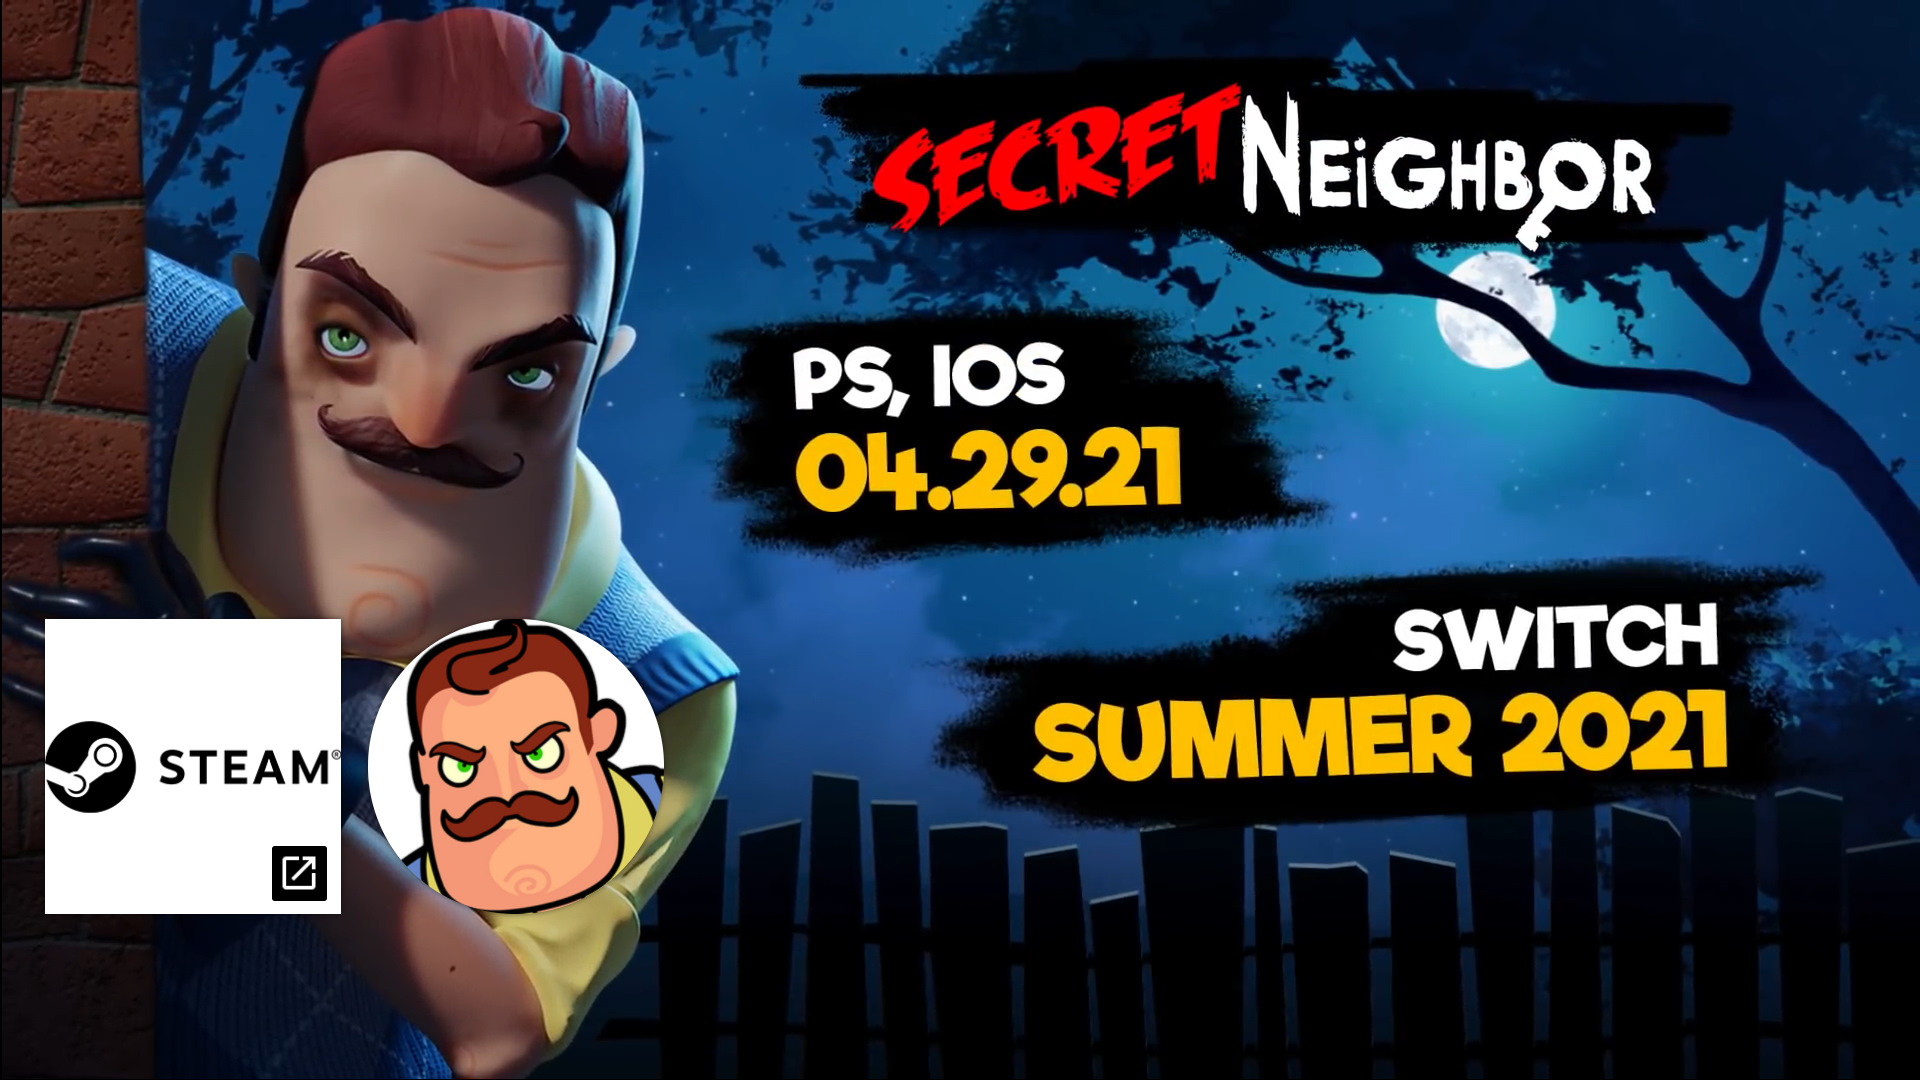 Multiplayer Social Horror Game “Secret Neighbor” Heading To